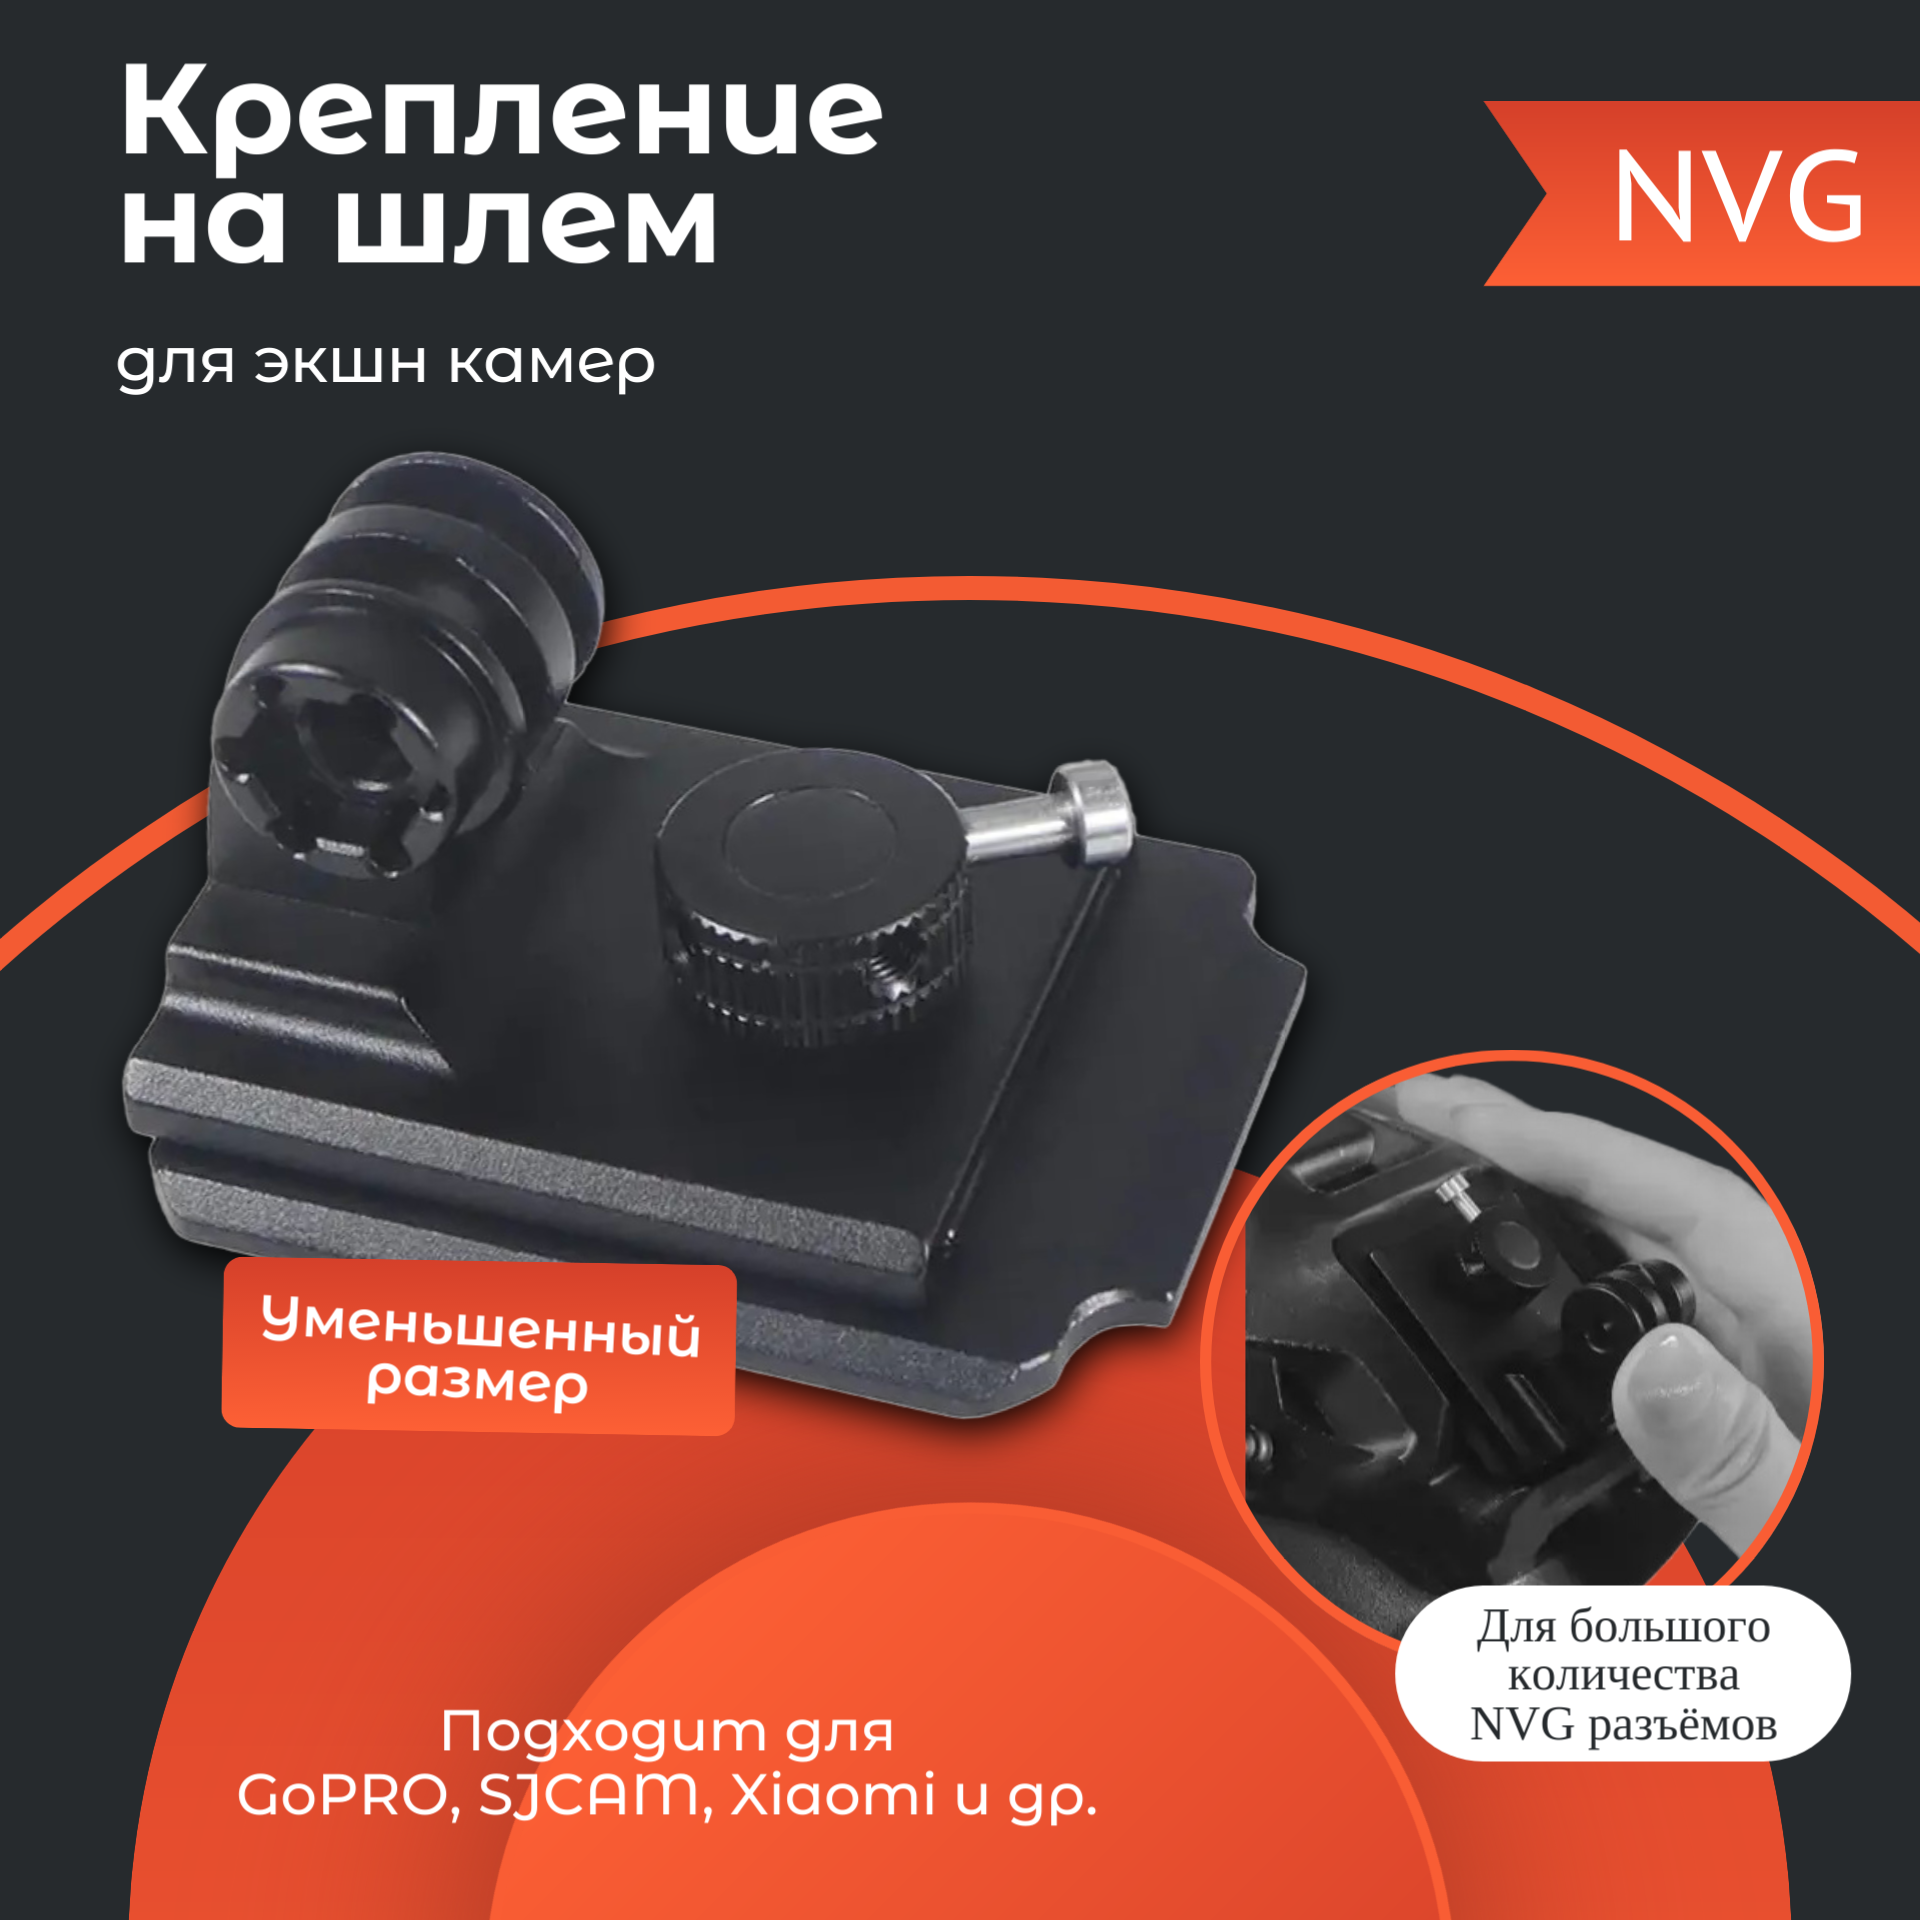 NVG крепление на шлем для экшн камеры GoPro SJCAM Xiaomi